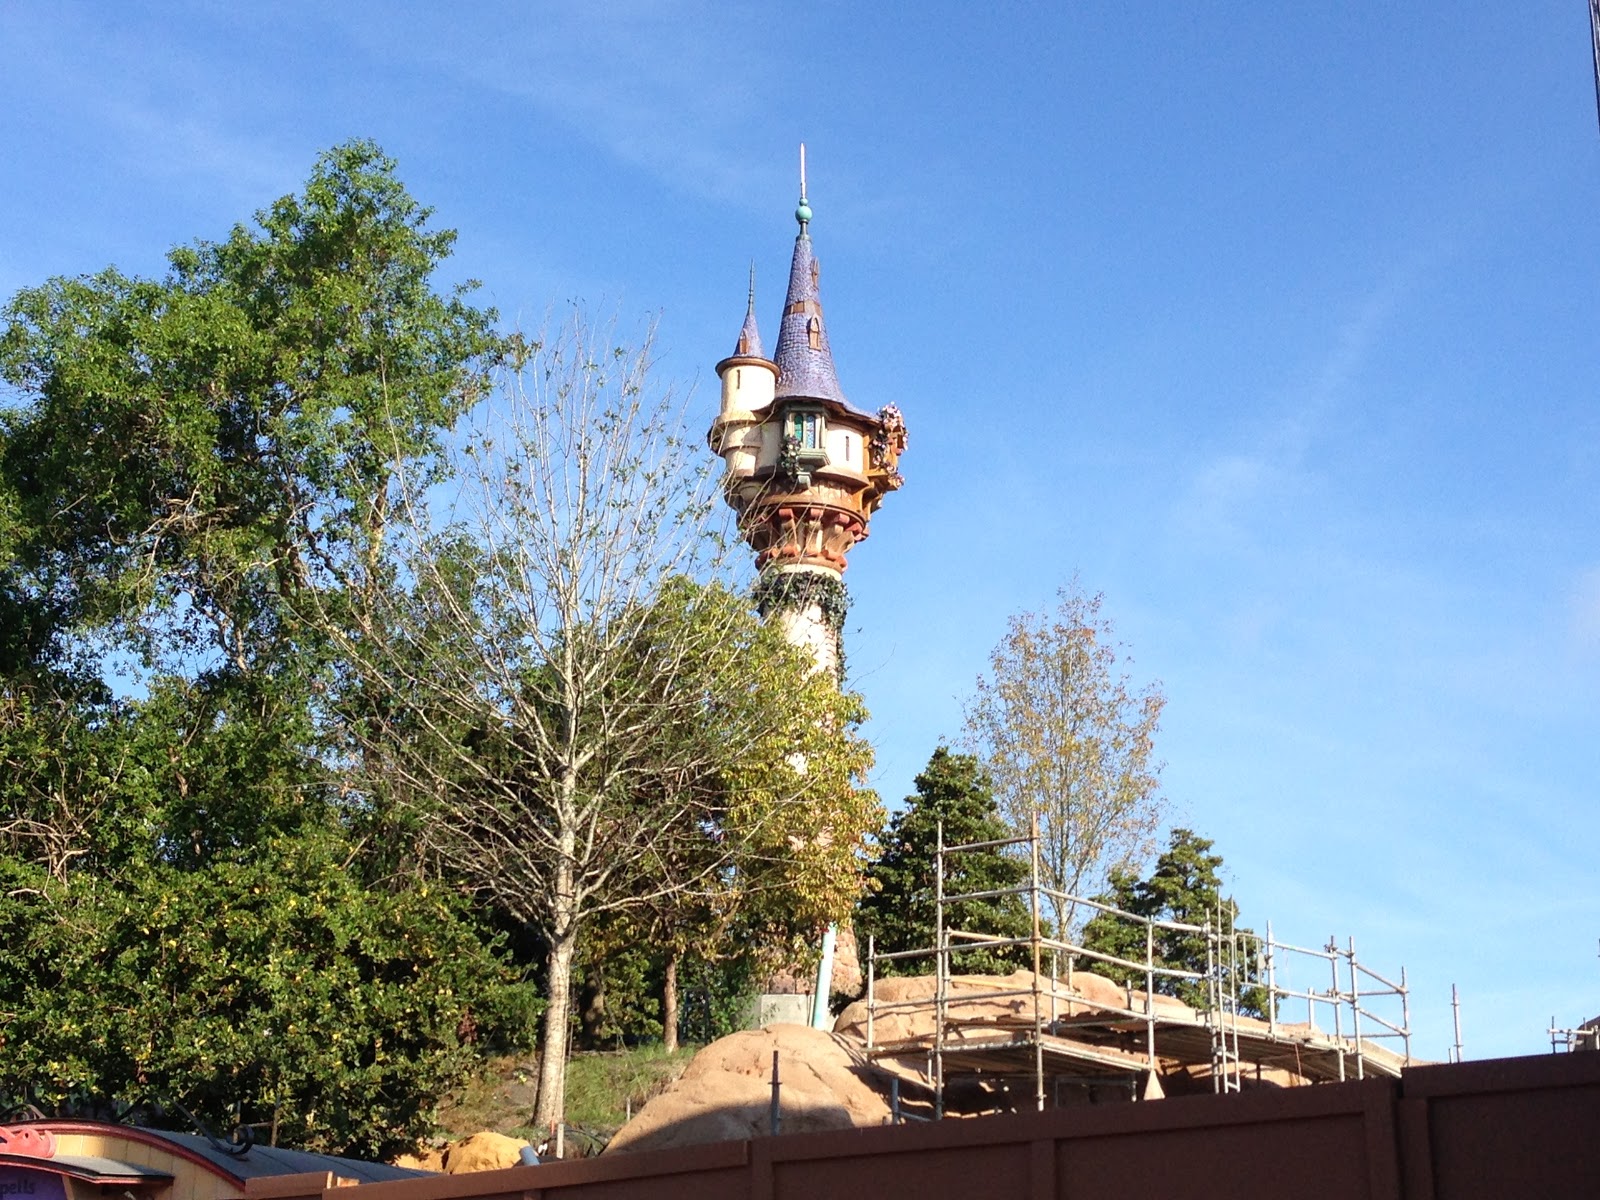 Digital Disney World DDW Pic 470. Rapunzel's Tower